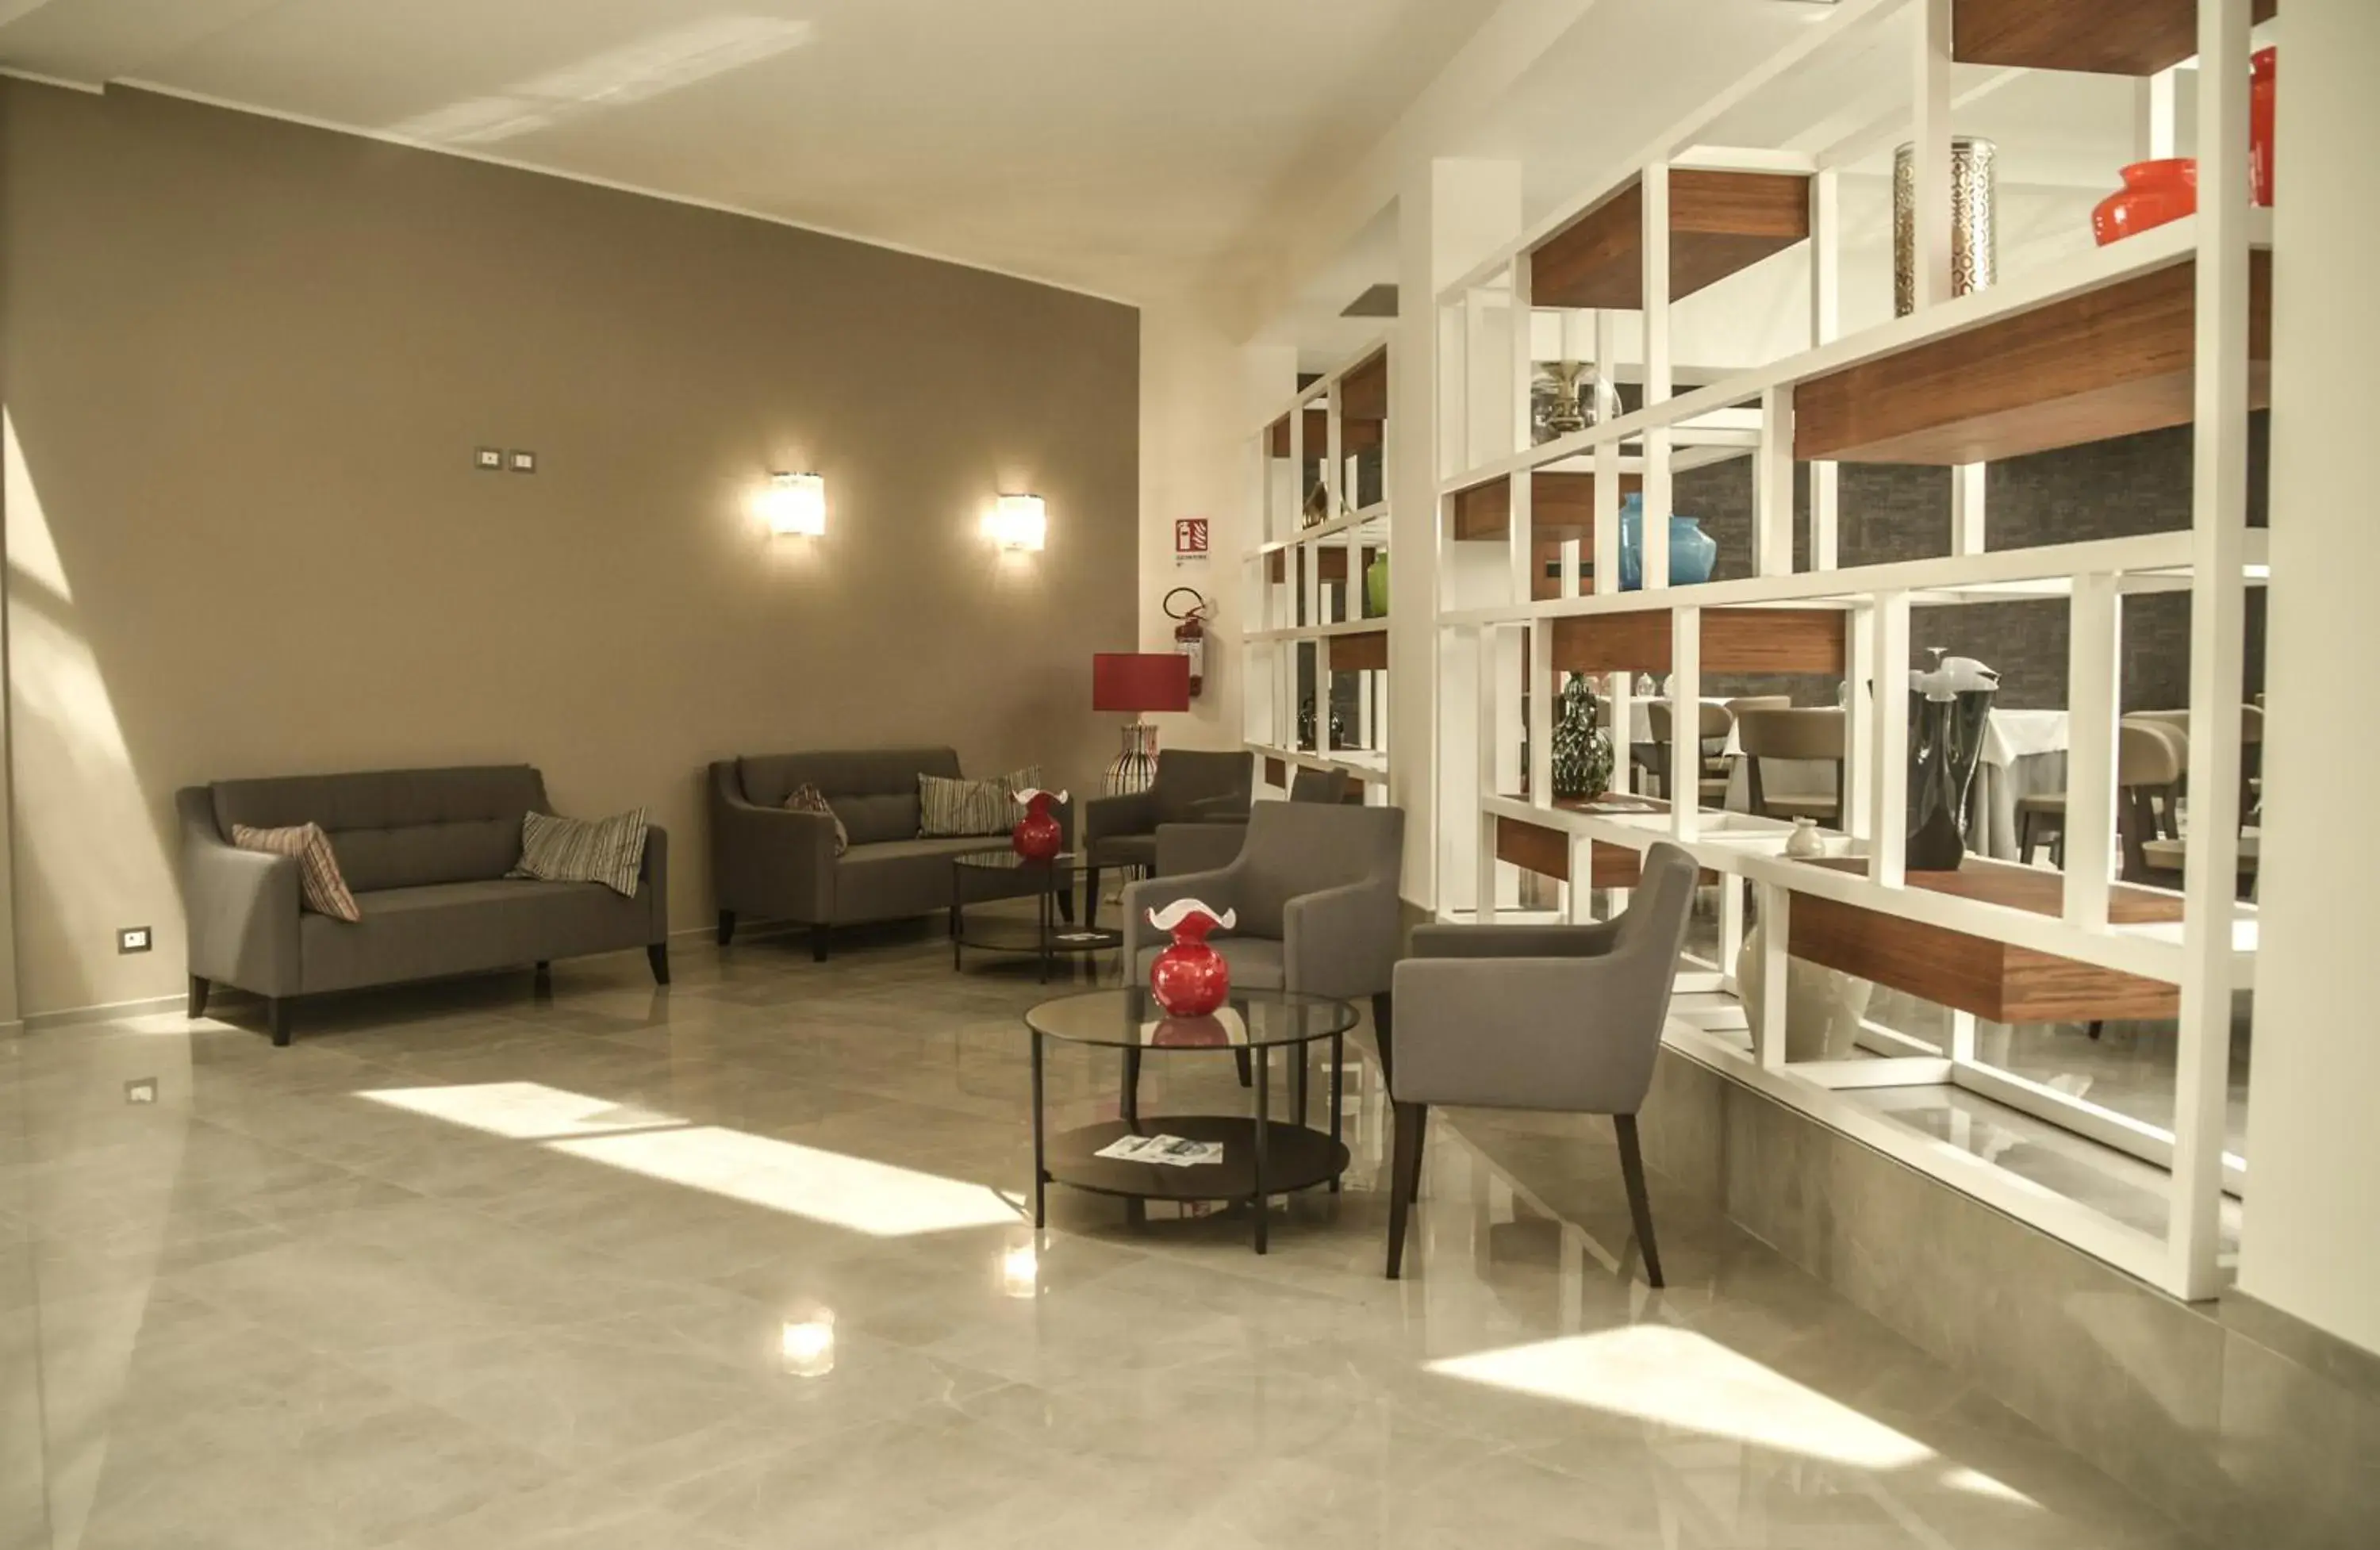 Lobby or reception in Hotel d'Aragona